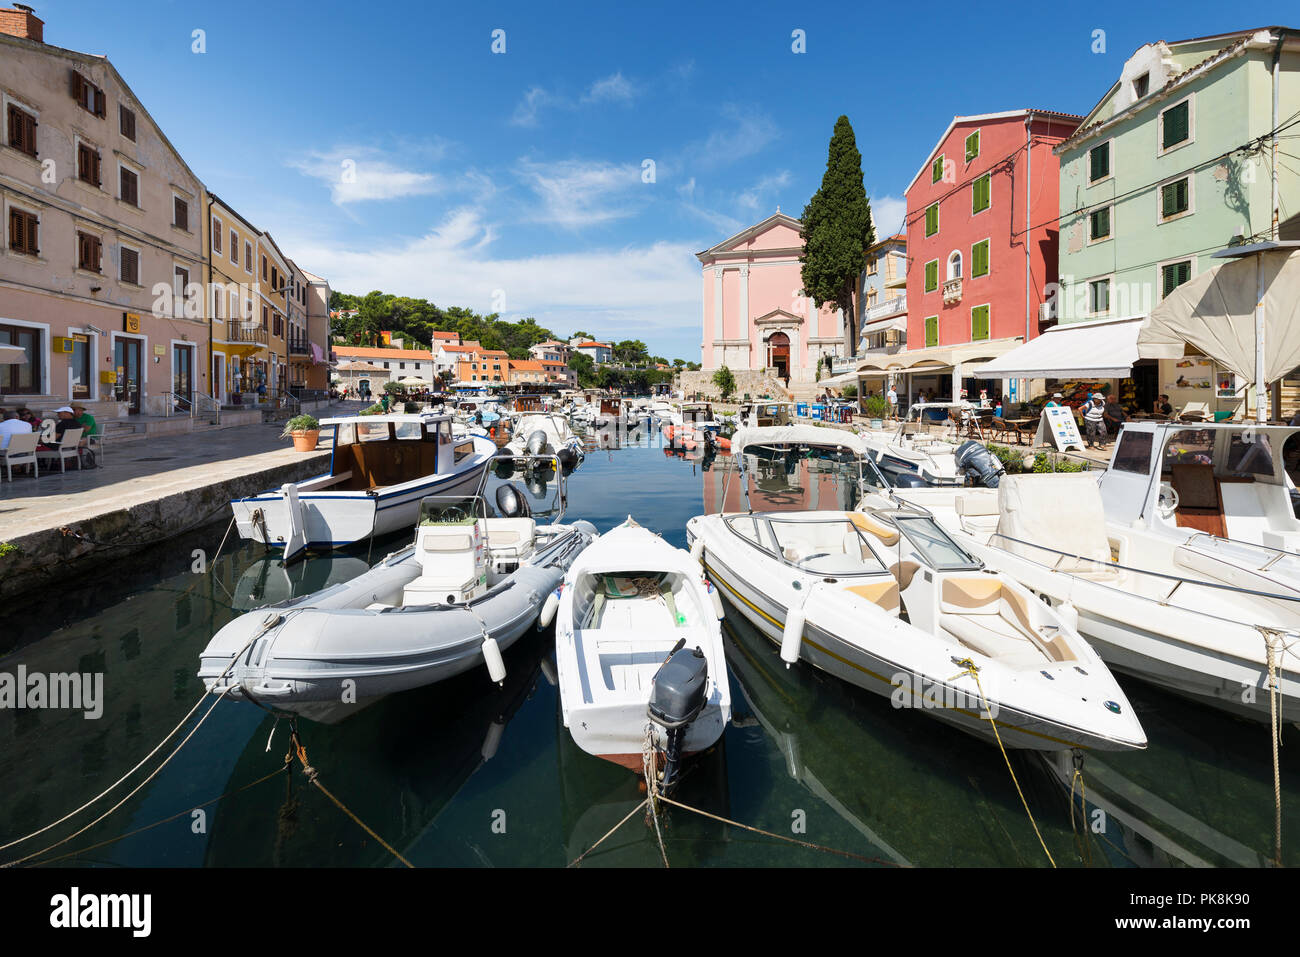 Les bateaux de pêche et ses maisons colorées de la lumière du soleil dans le port de la vieille ville de Veli Lošinj sur l'île de Lošinj, la baie de Kvarner, Croatie Banque D'Images